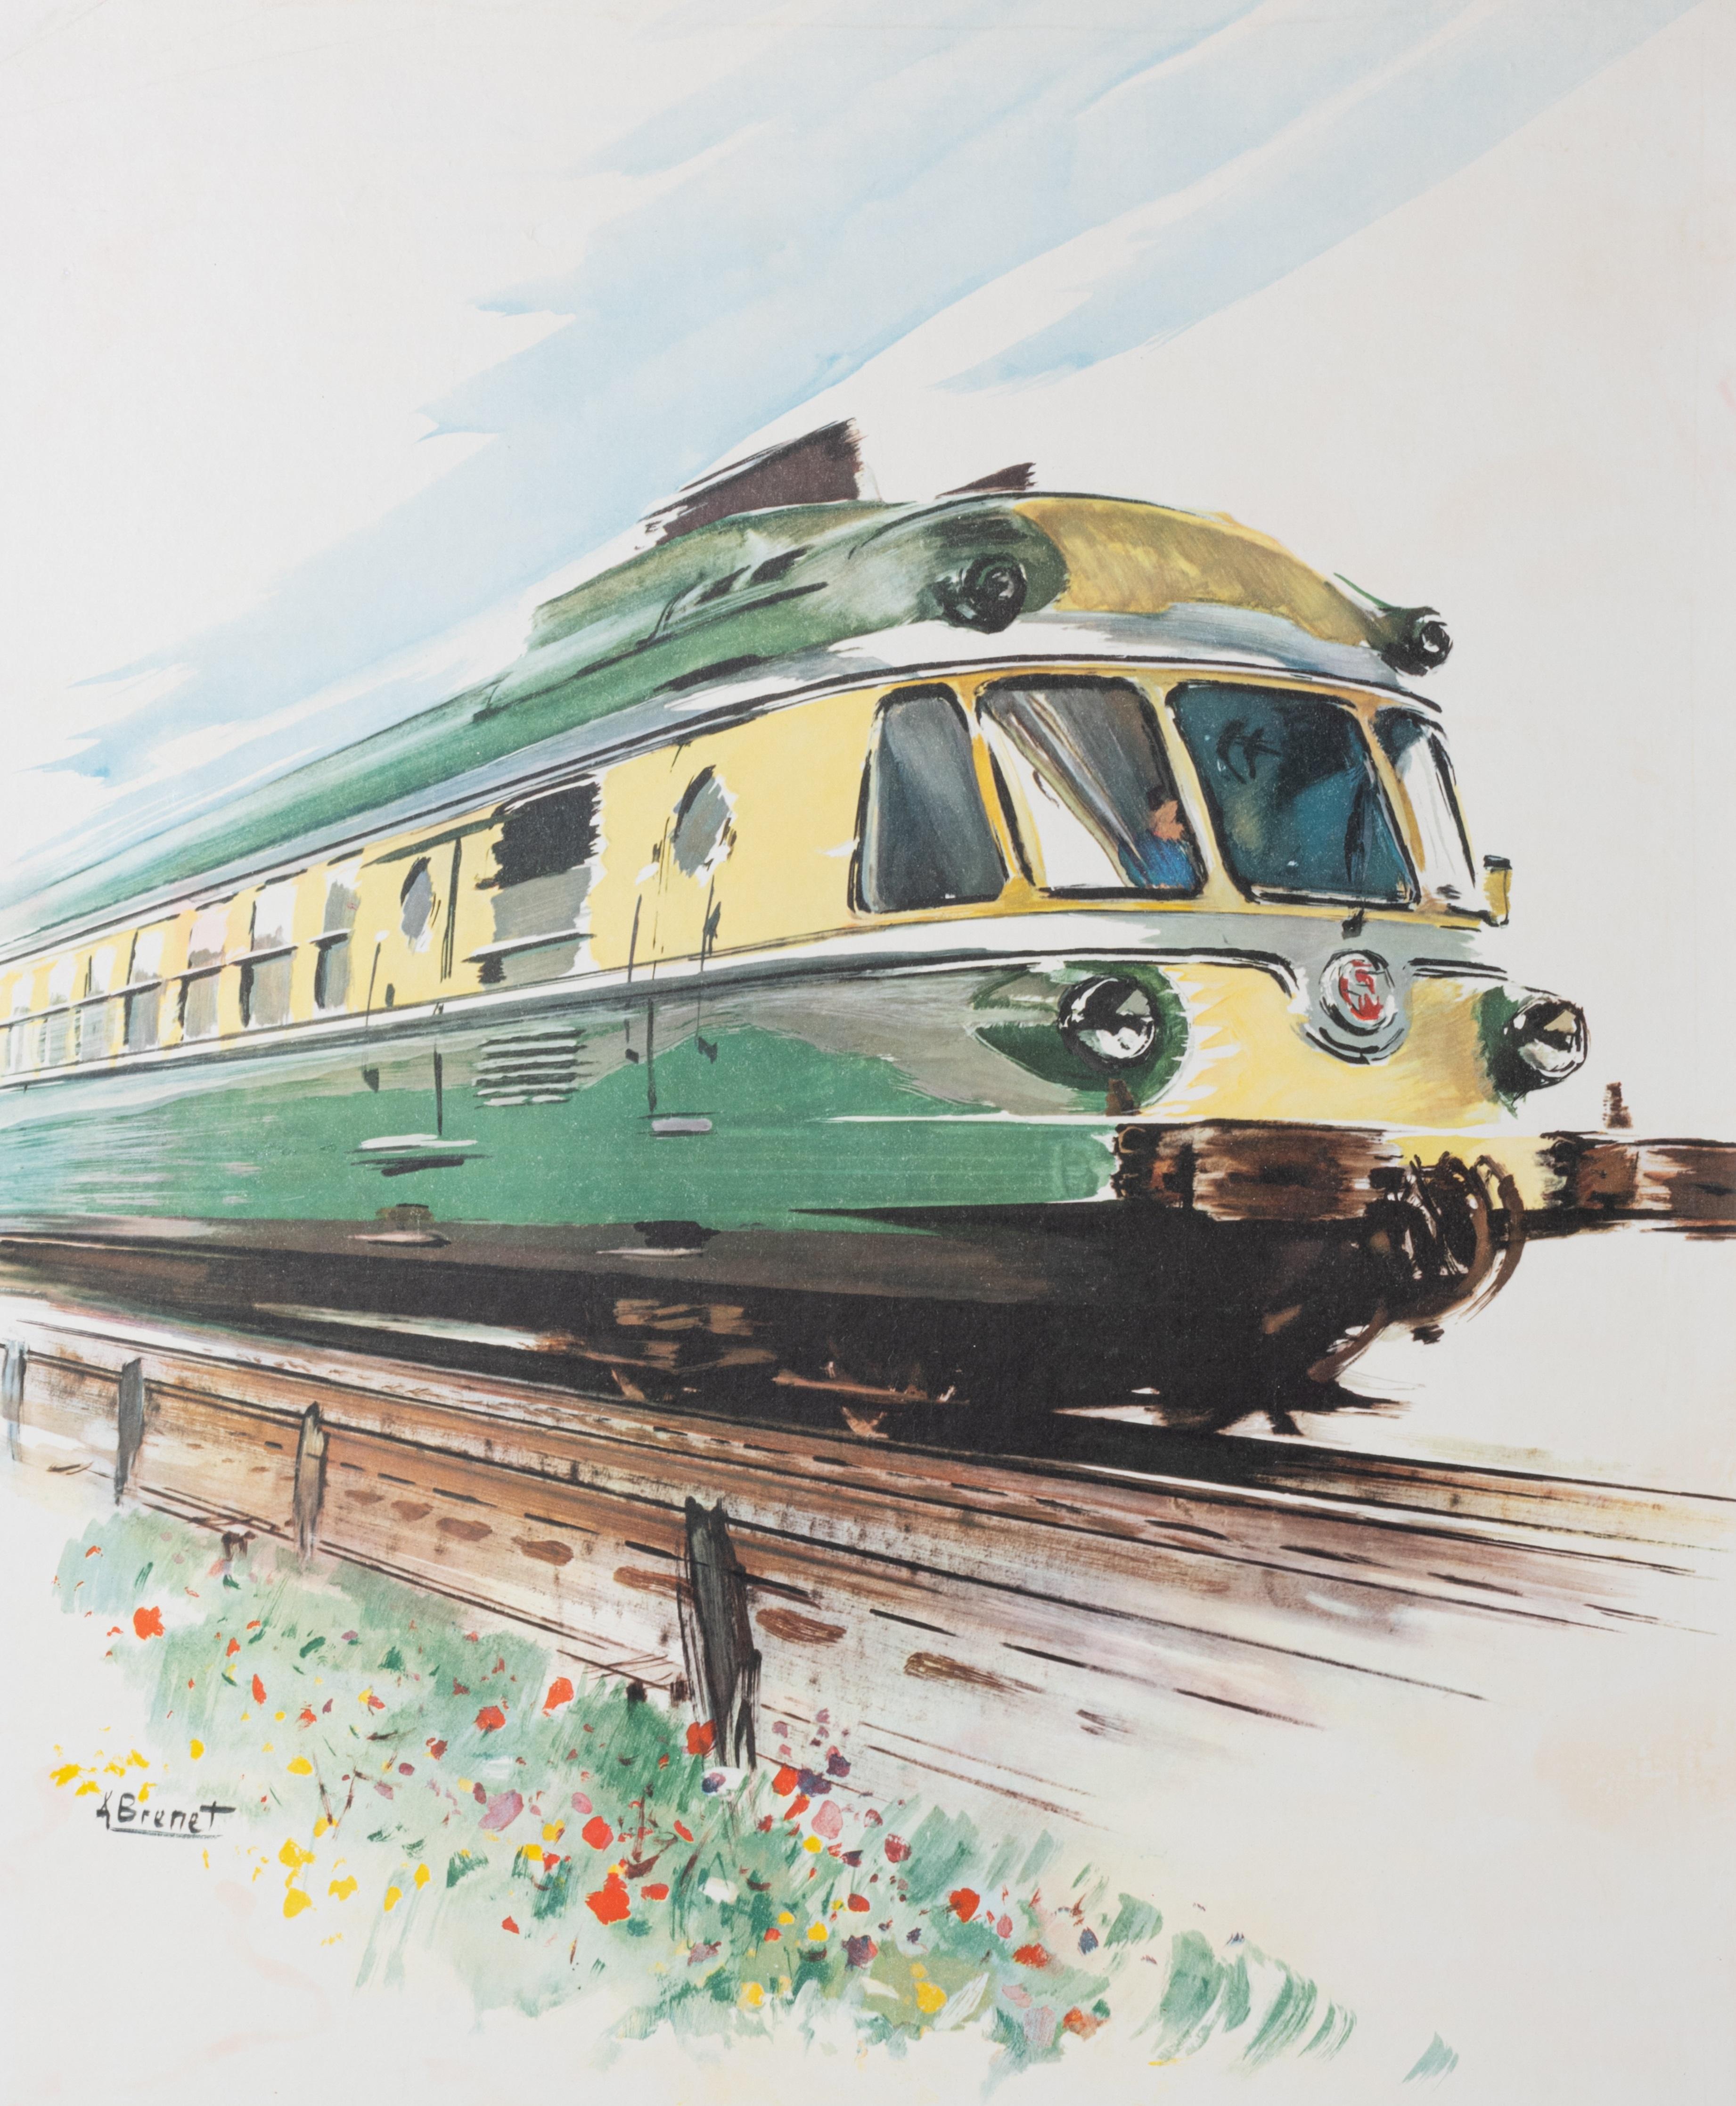 Cette affiche des Chemins de fer français a été réalisée en 1958 par Albert Brenet pour promouvoir le tourisme ferroviaire en France.

Artistics : Albert Brenet (1903 - 2005)
Titre : Société Nationale des Chemins de Fer Français - Vitesse -